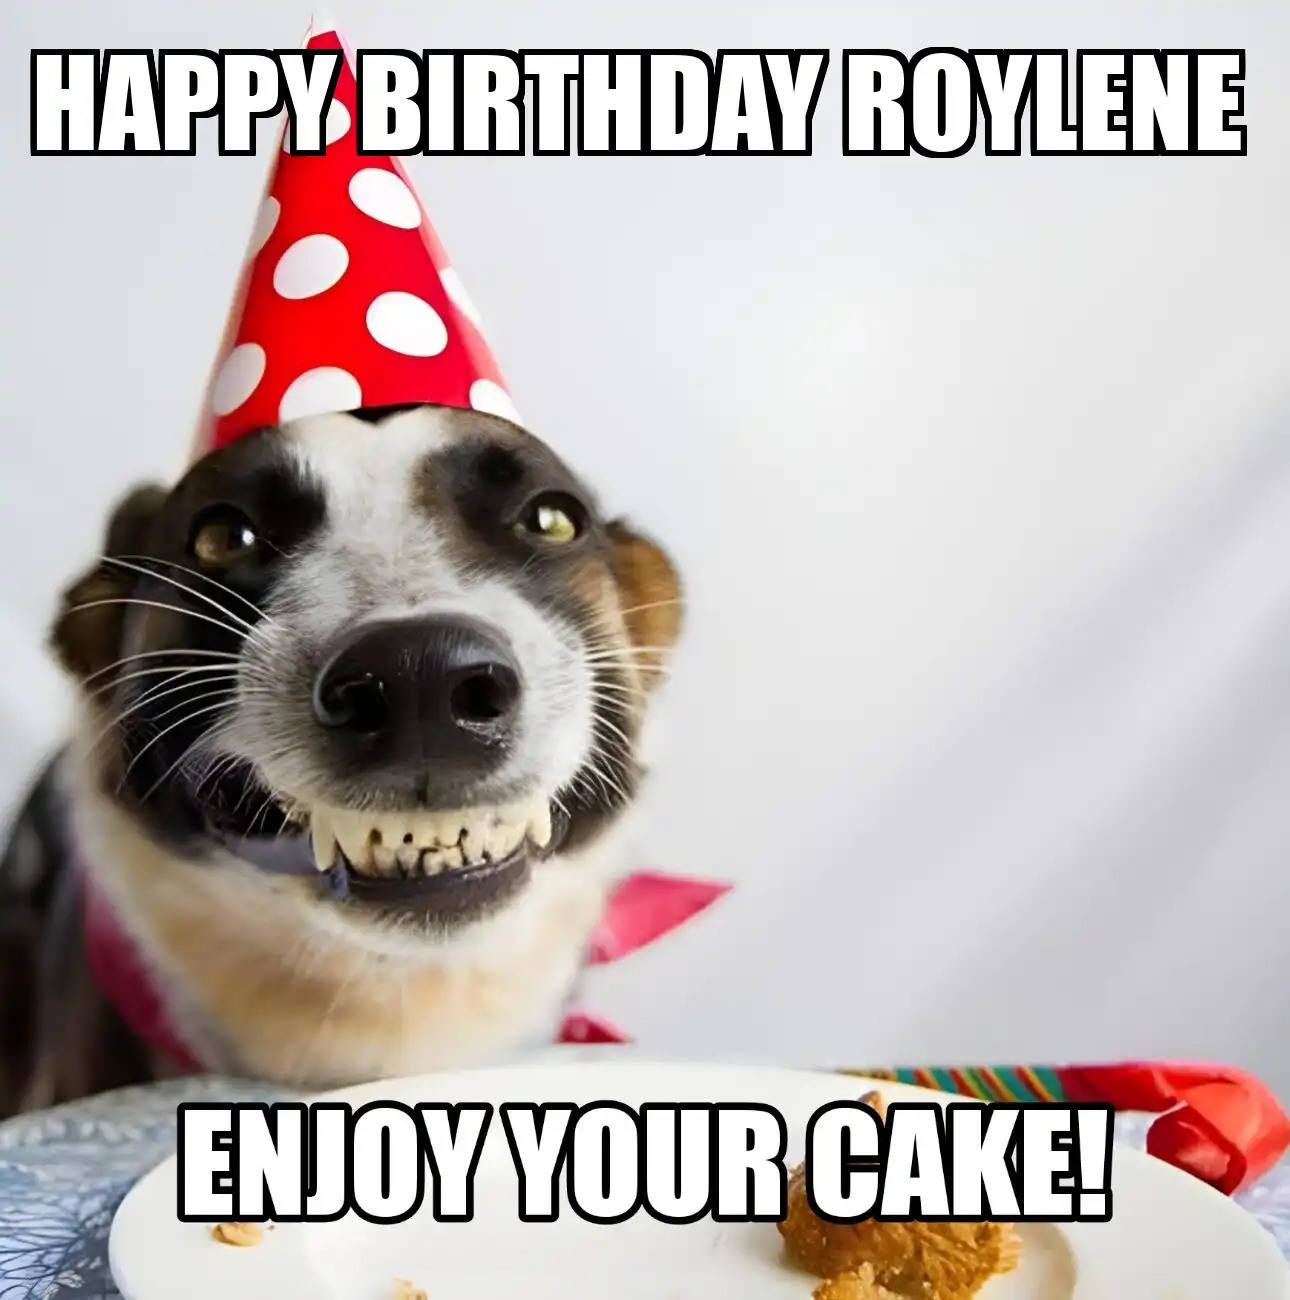 Happy Birthday Roylene Enjoy Your Cake Dog Meme